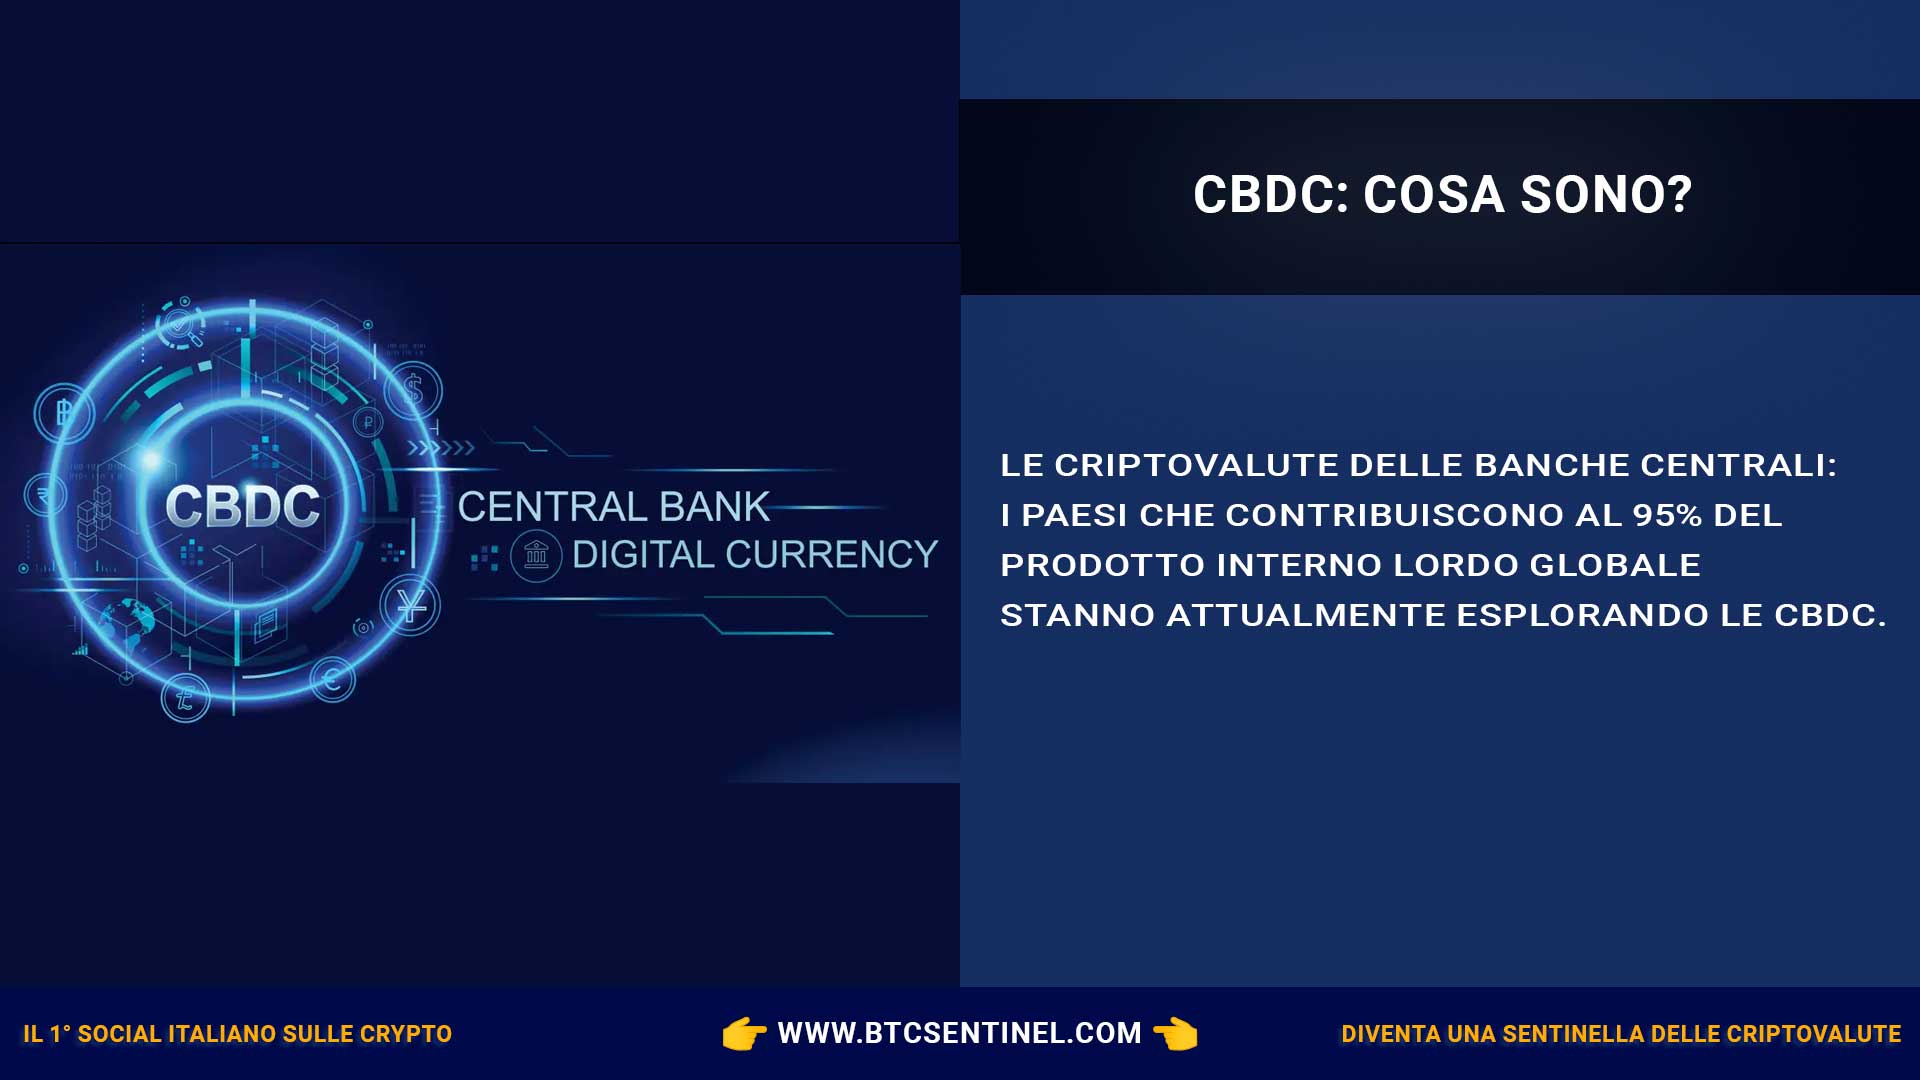 Criptovalute delle banche centrali (CBDC): cosa sono e perché sono importanti